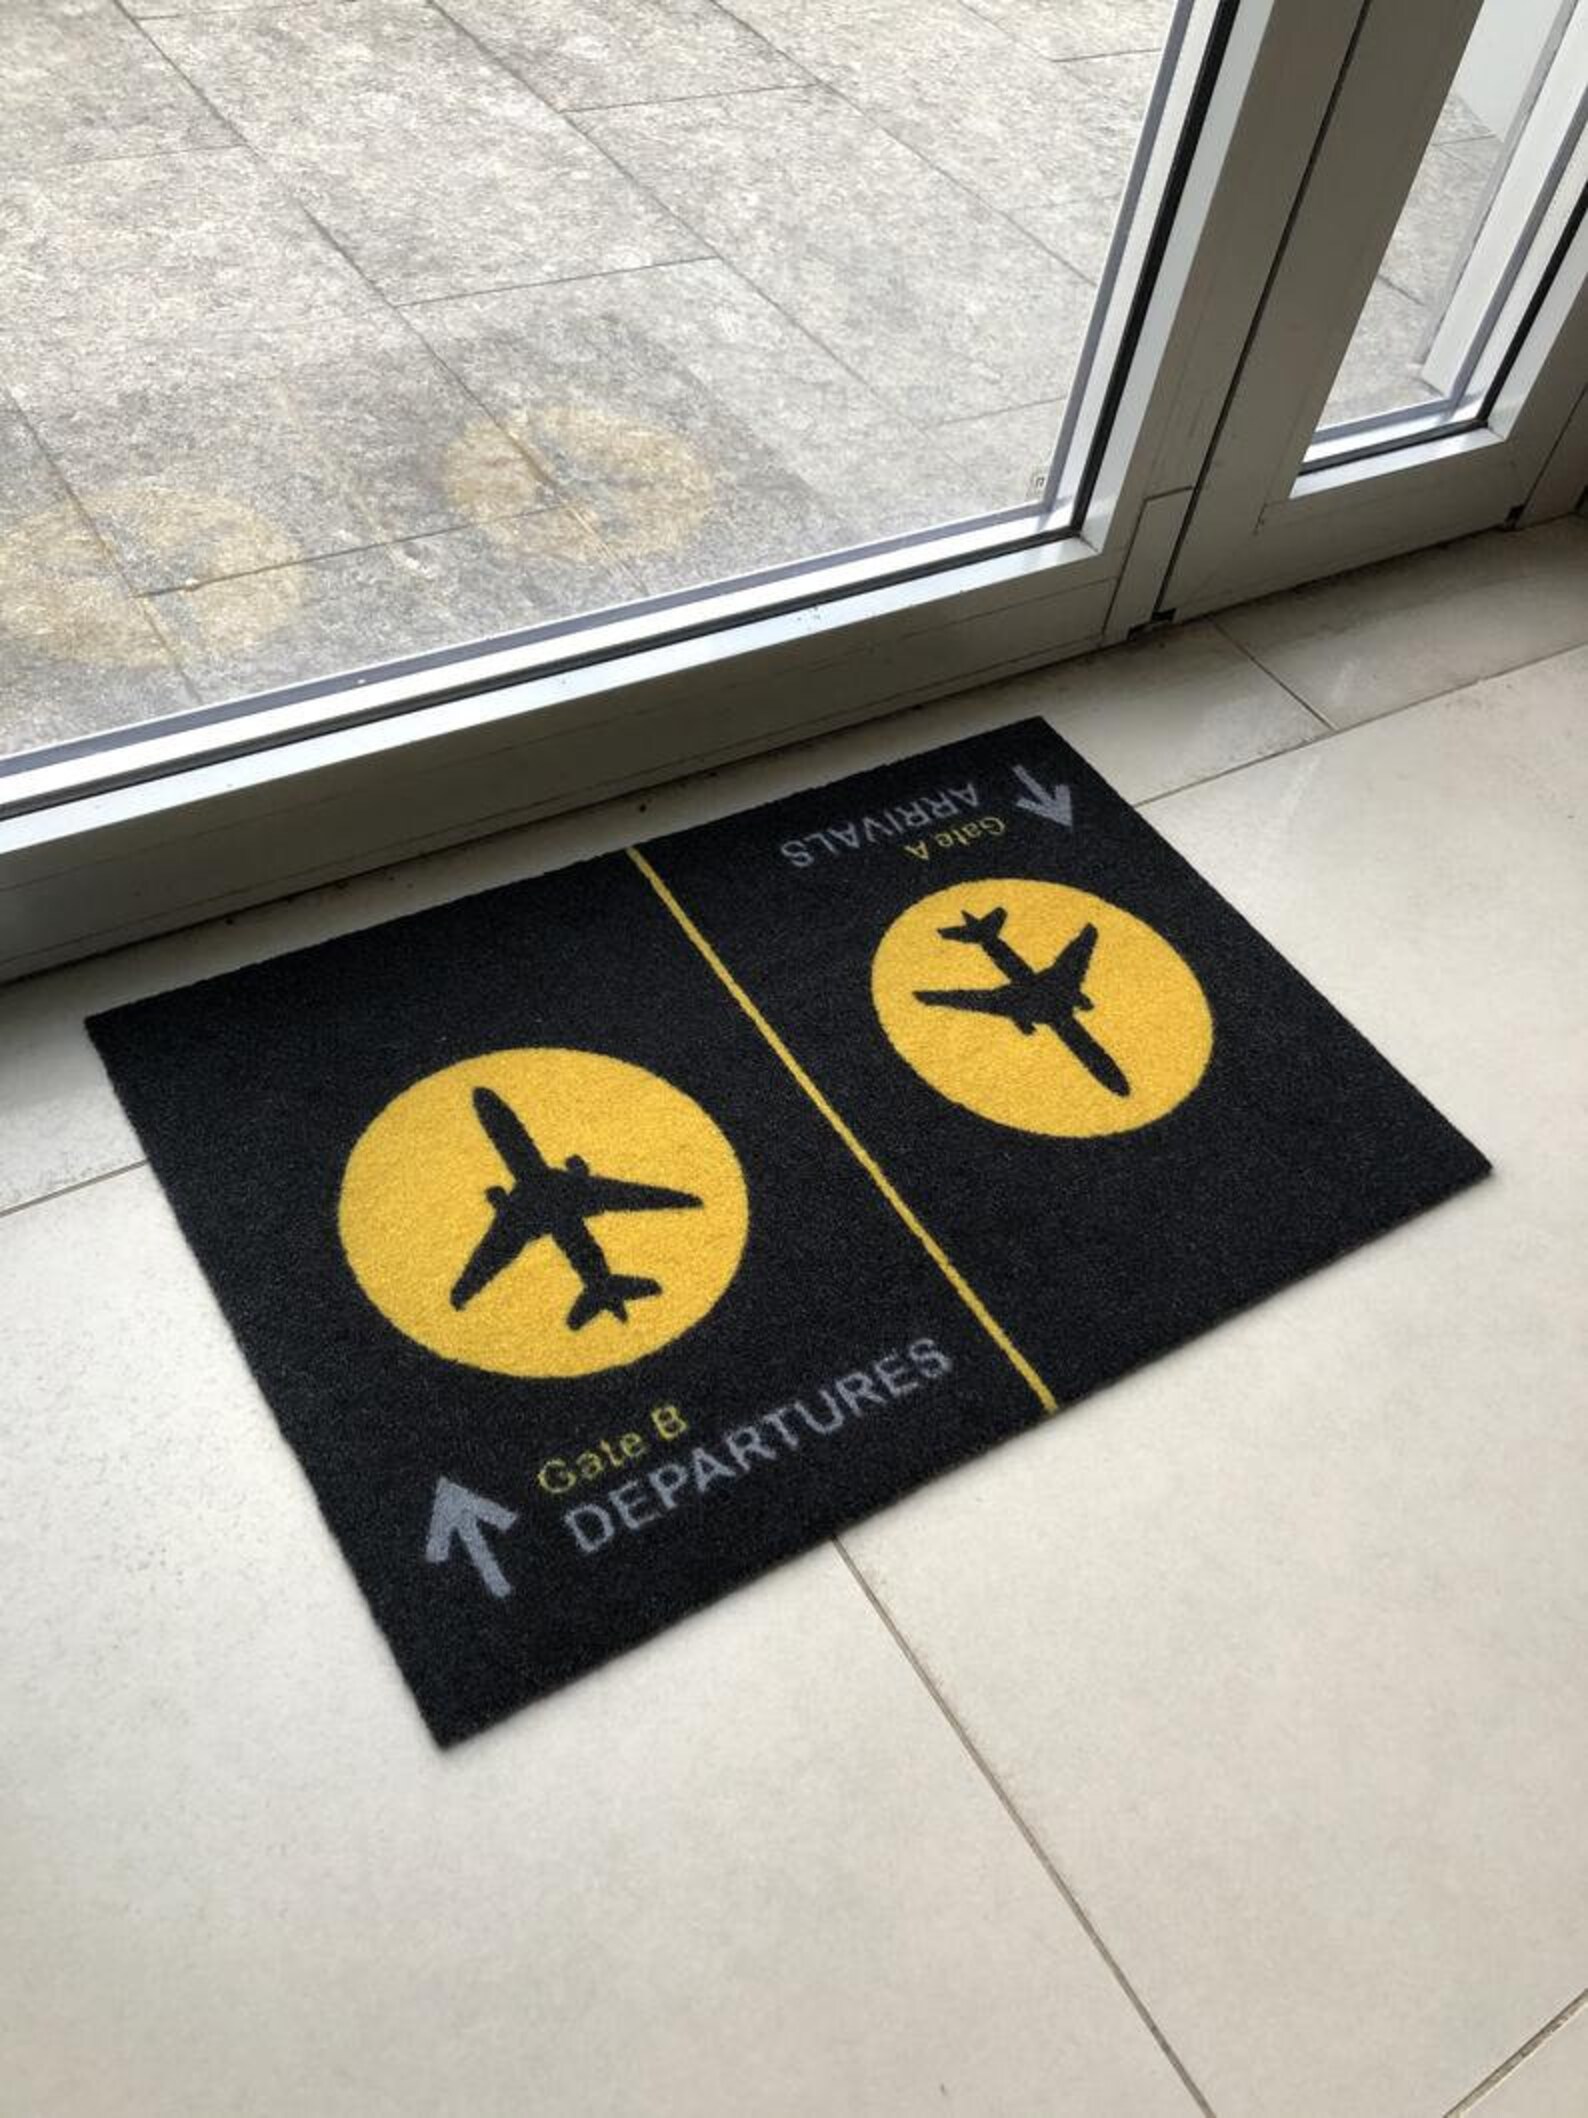 Door mat Arrival Departure Outdoor Welcome Mat Floor mat | Etsy